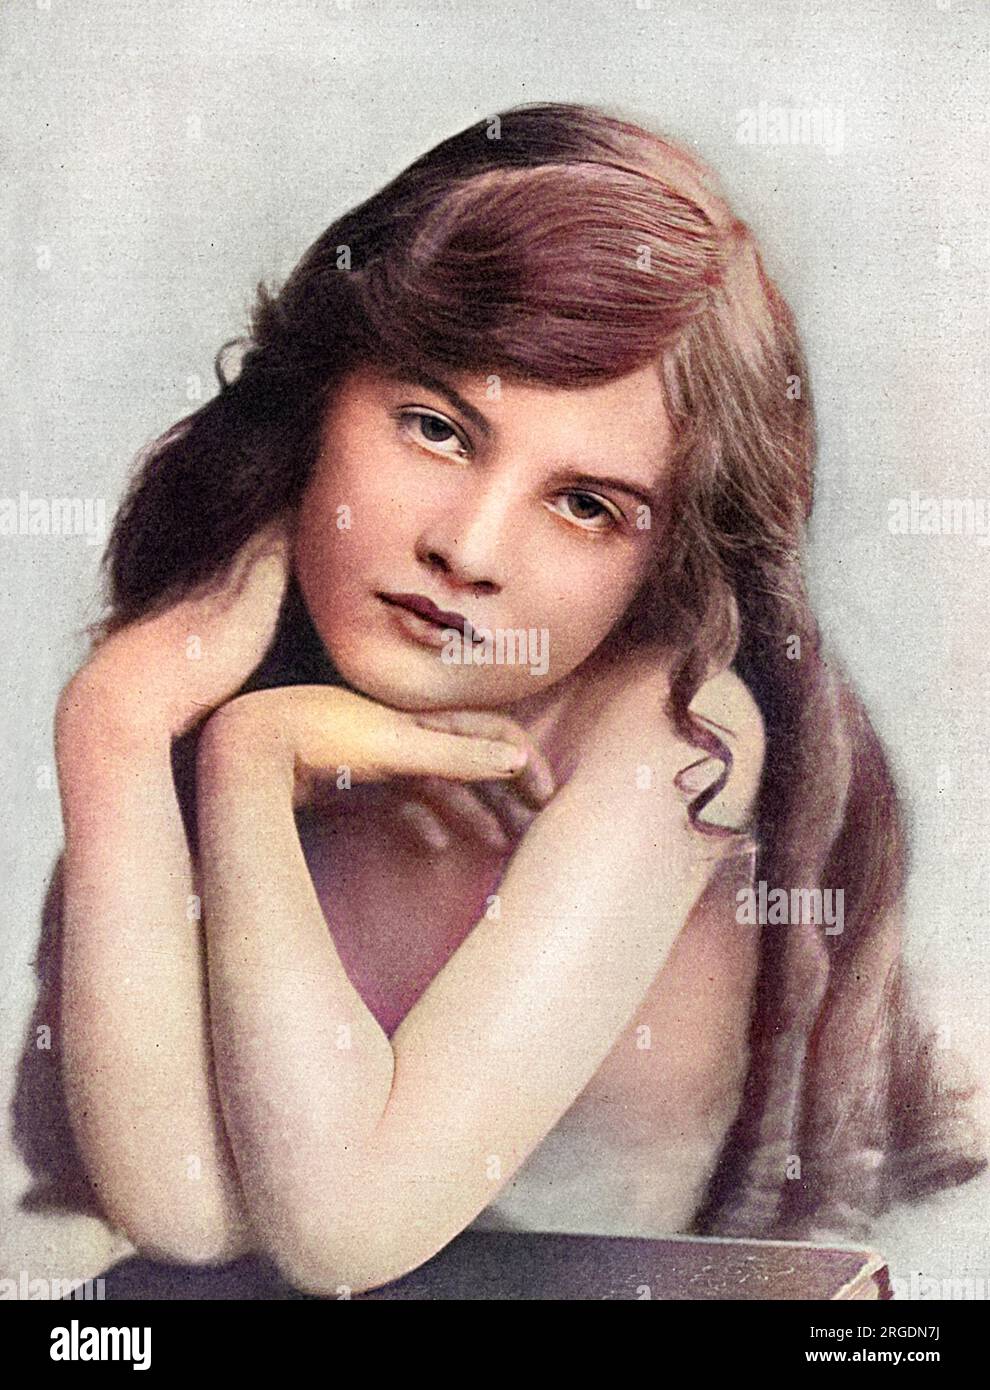 Estelle Dudley, petite actrice, photographiée dans le magazine Tatler, à l'époque, elle se produit dans un matinee patriotique au Kingsway Theatre. Banque D'Images